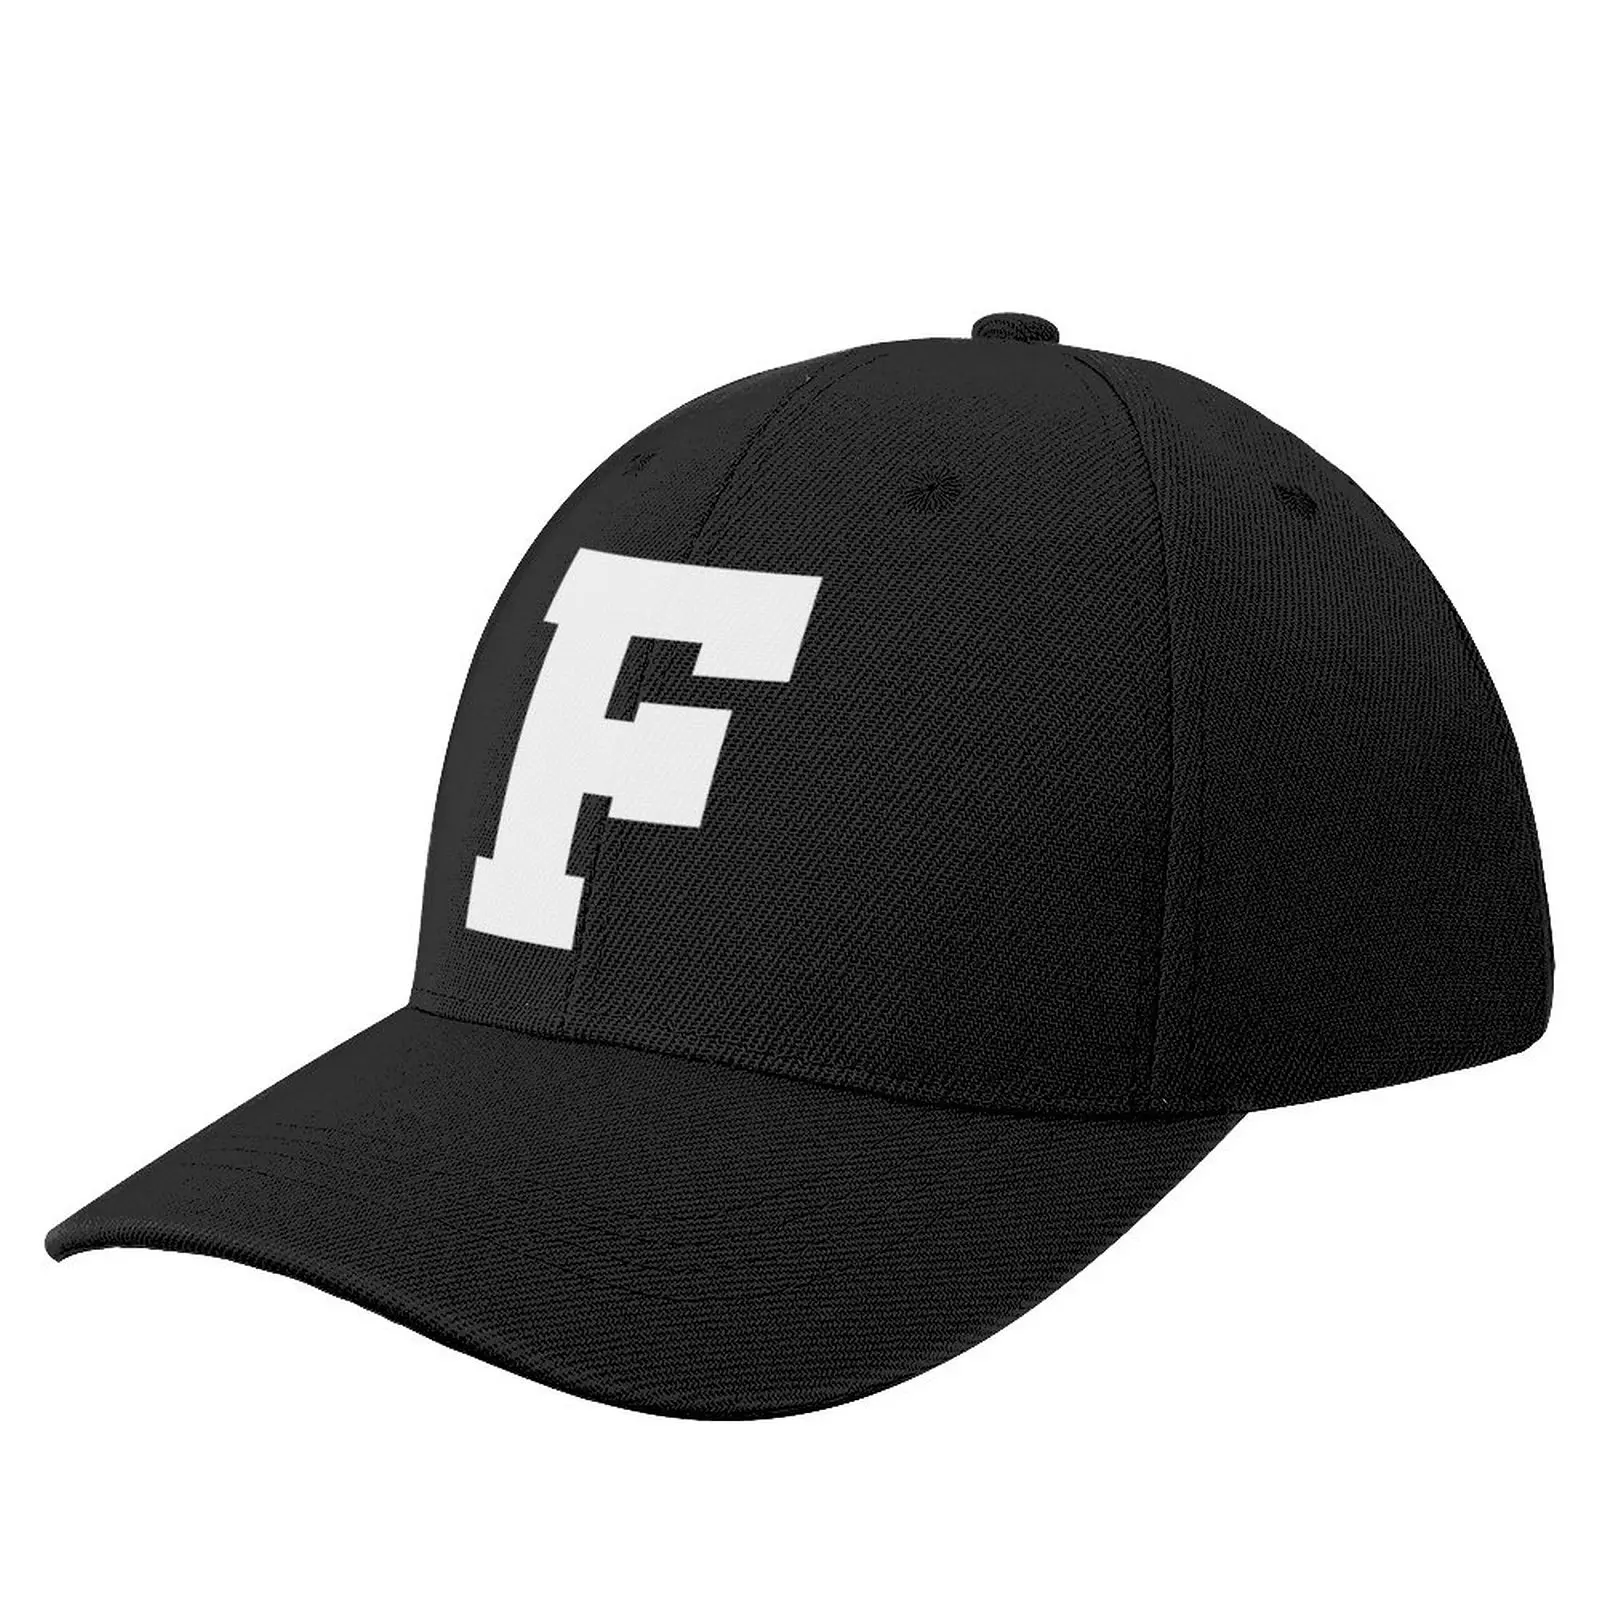 Алфавит, белая буква F, спортивная буква F, бейсболка, западные шляпы, мужские шляпы на день рождения, женские шляпы